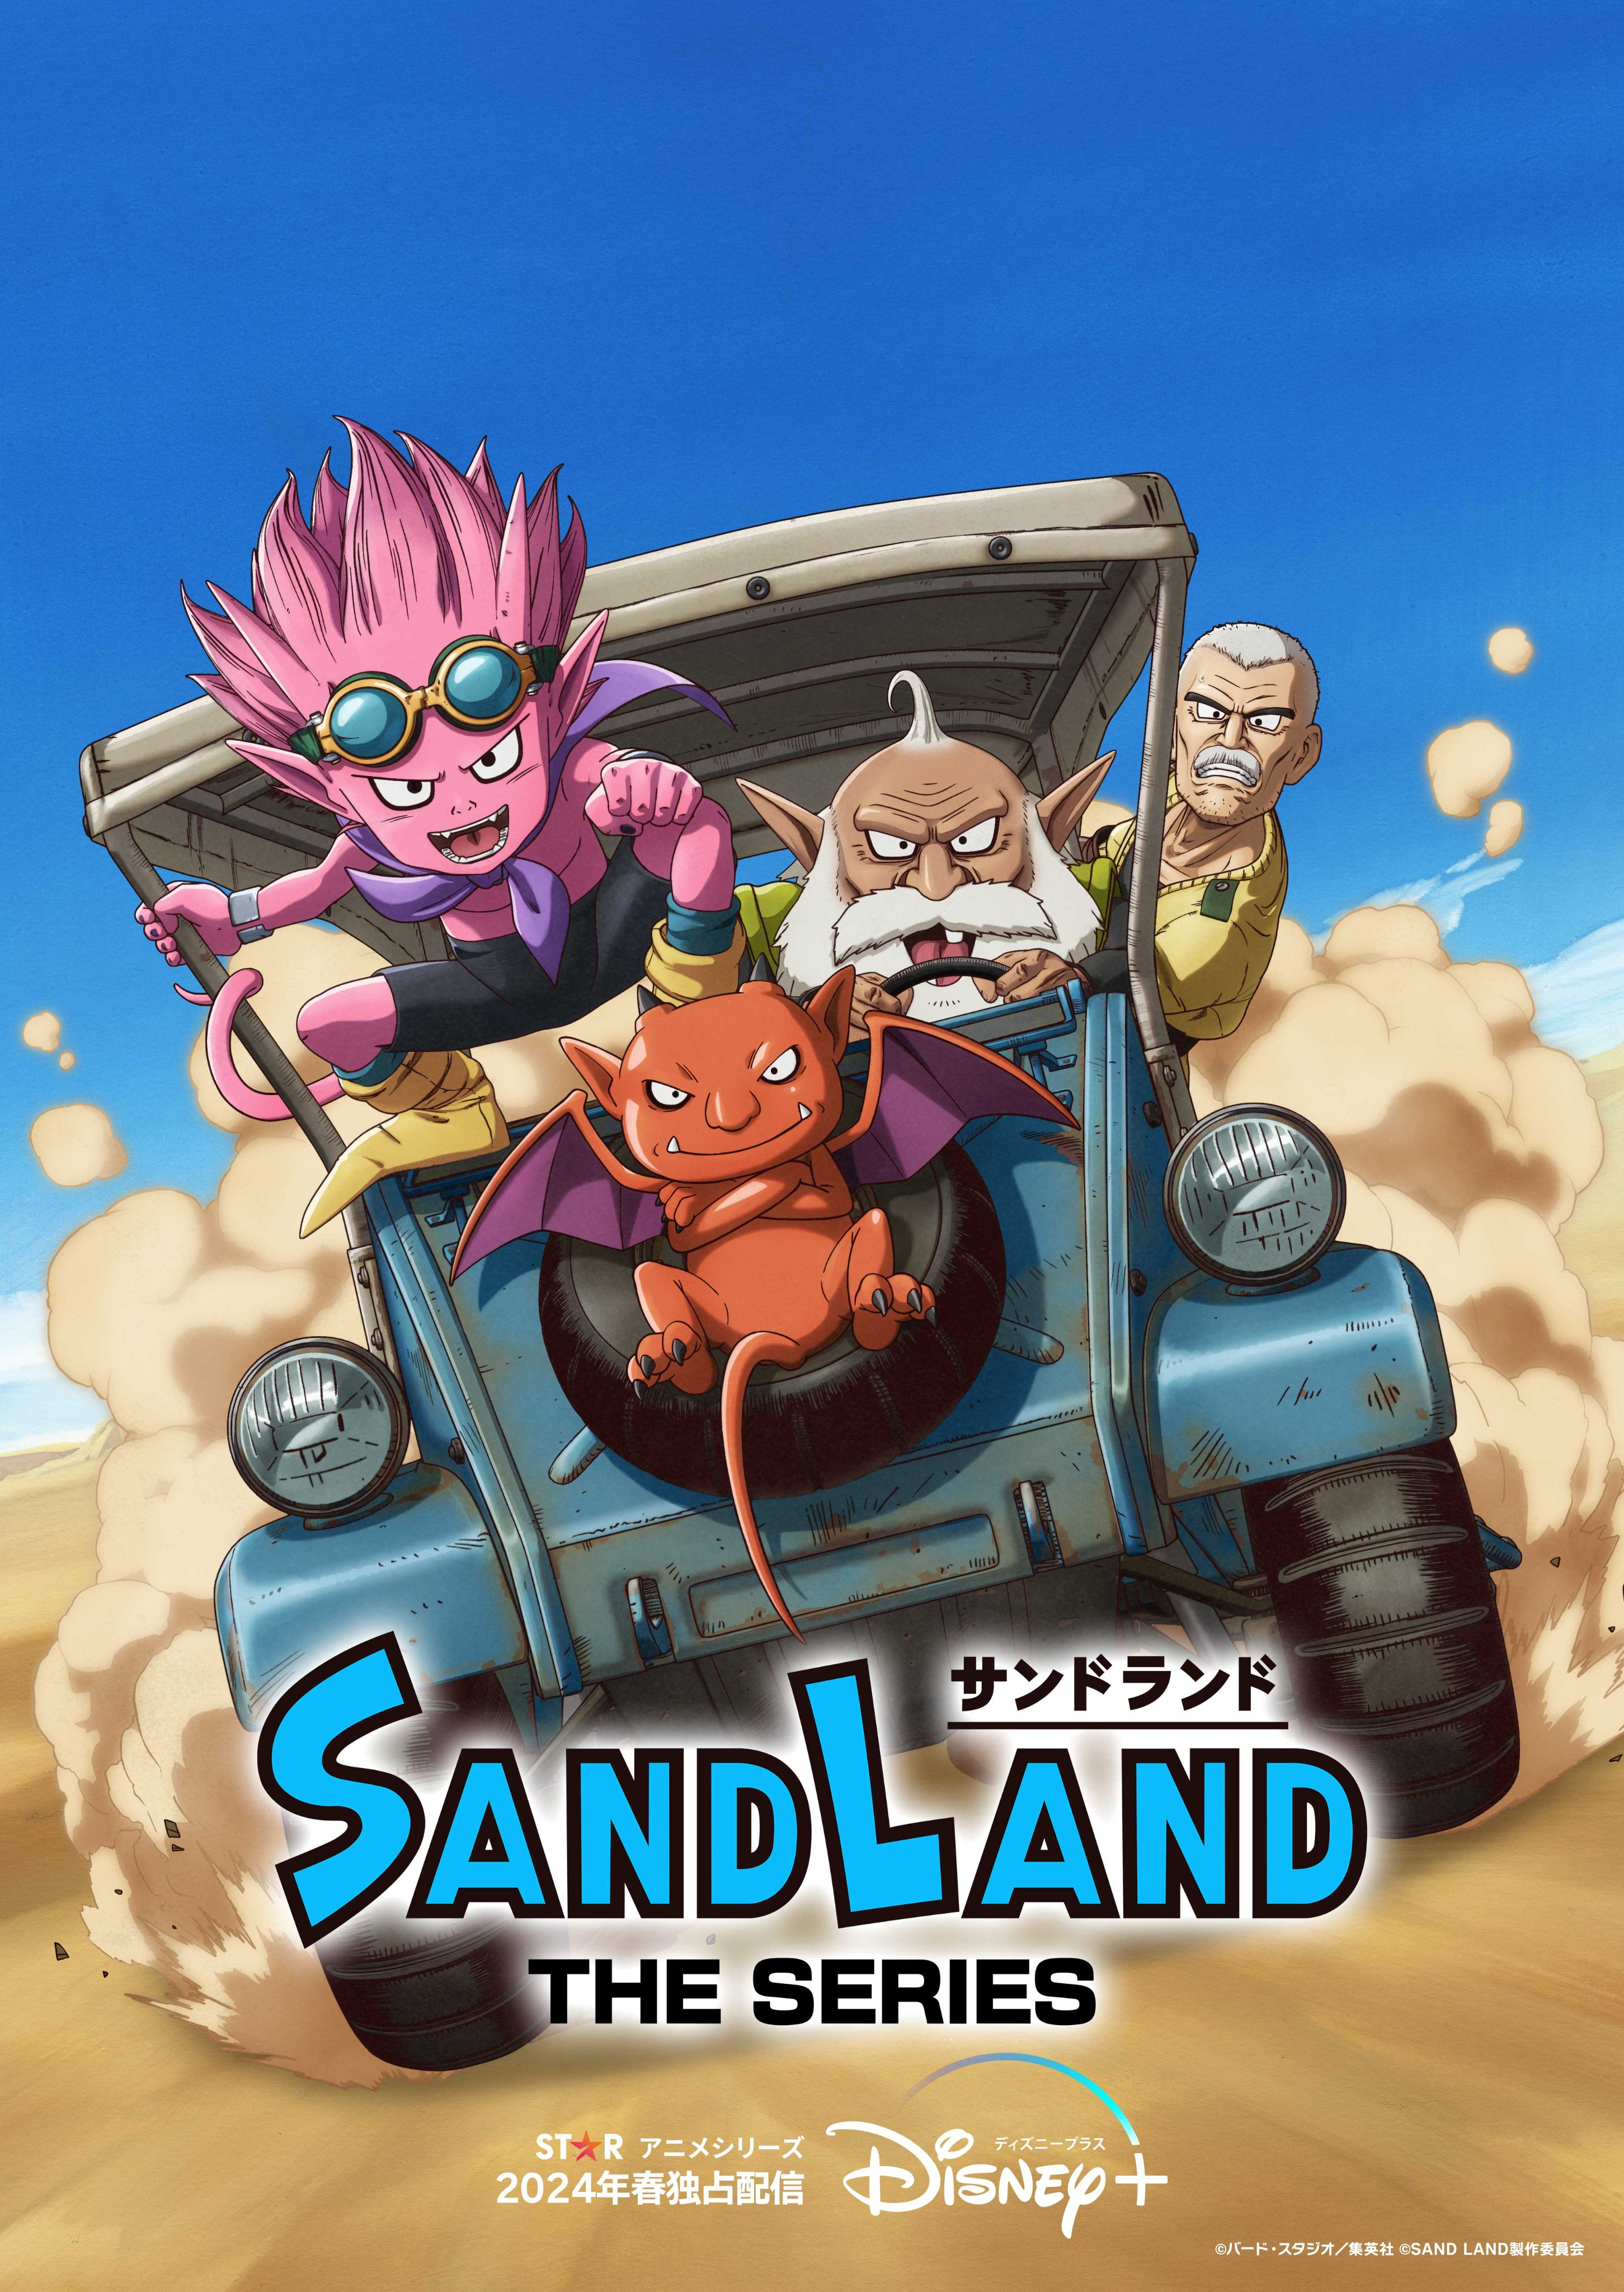 鸟山明原作漫画《SAND LAND》宣布改编成电视动画系列《SAND LAND: THE SERIES》，2024 年春季迪斯尼流媒体“Disney+”独家上线！-二次元COS分享次元吧